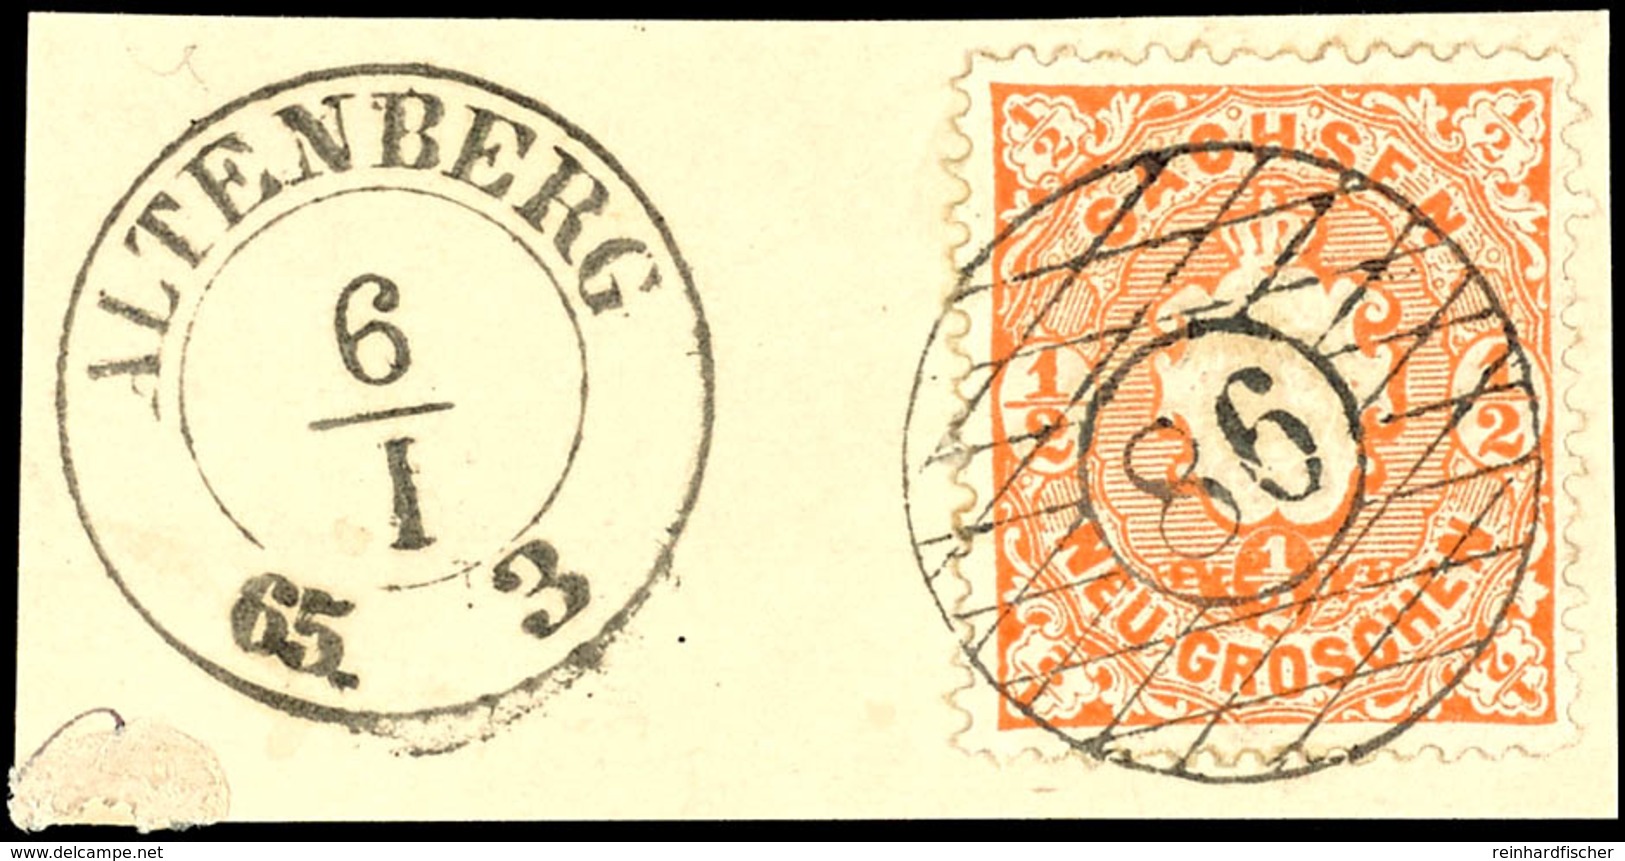 "86" Nebst K2 "ALTENBERG 6 I 65" Auf Kabinettbriefstück 1/2 Ngr. Wappen, Beide Stempel Sind Klar Aufgesetzt, Katalog: 15 - Sachsen